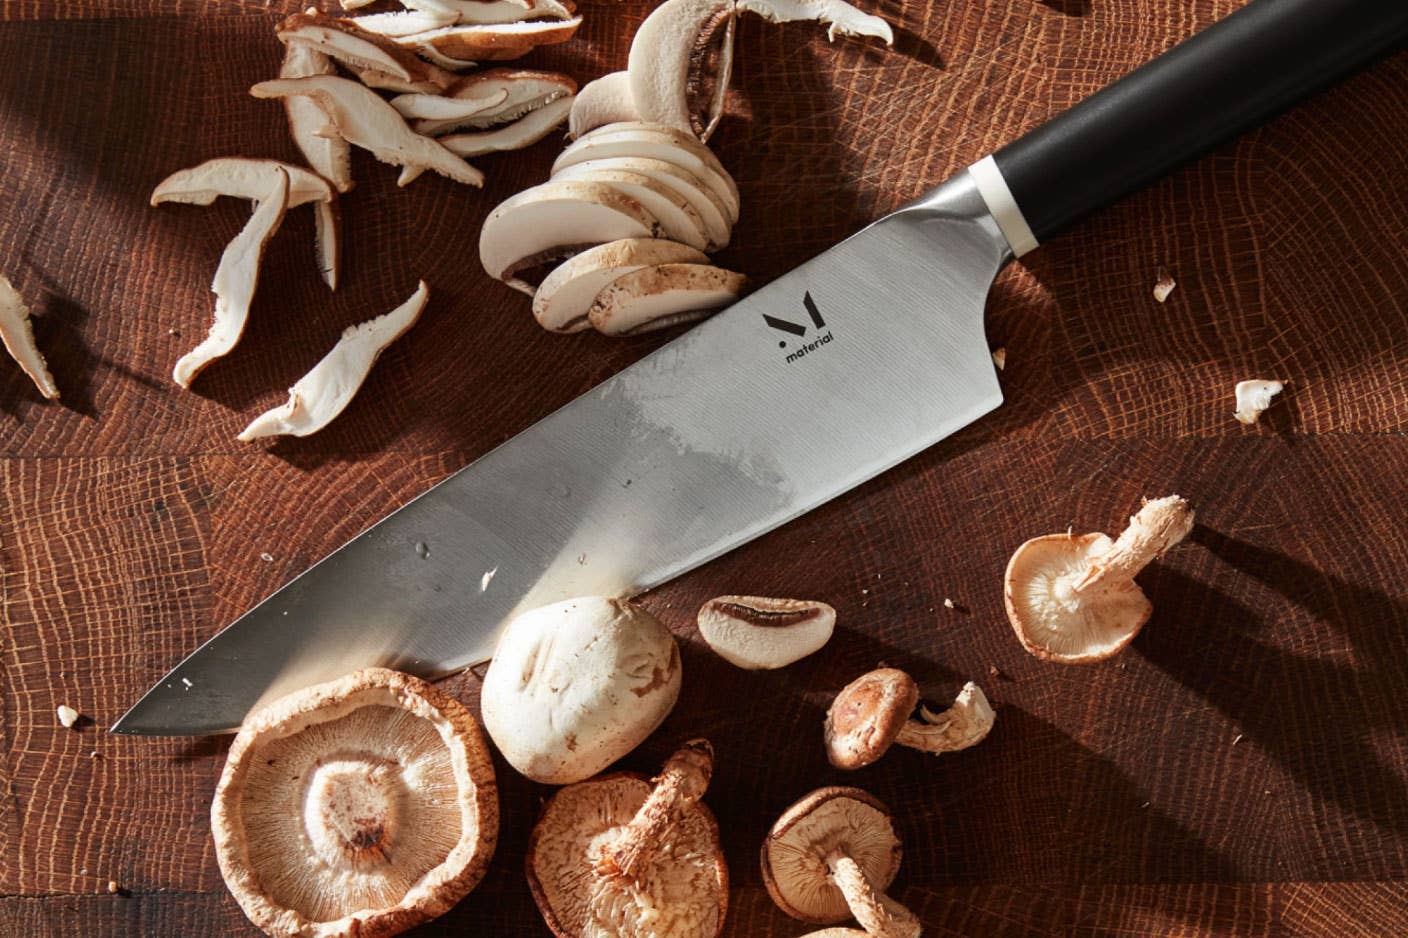 https://www.saveur.com/uploads/2018/01/31/best-chef-knives-material-saveur.jpg?auto=webp&auto=webp&optimize=high&quality=70&width=1440